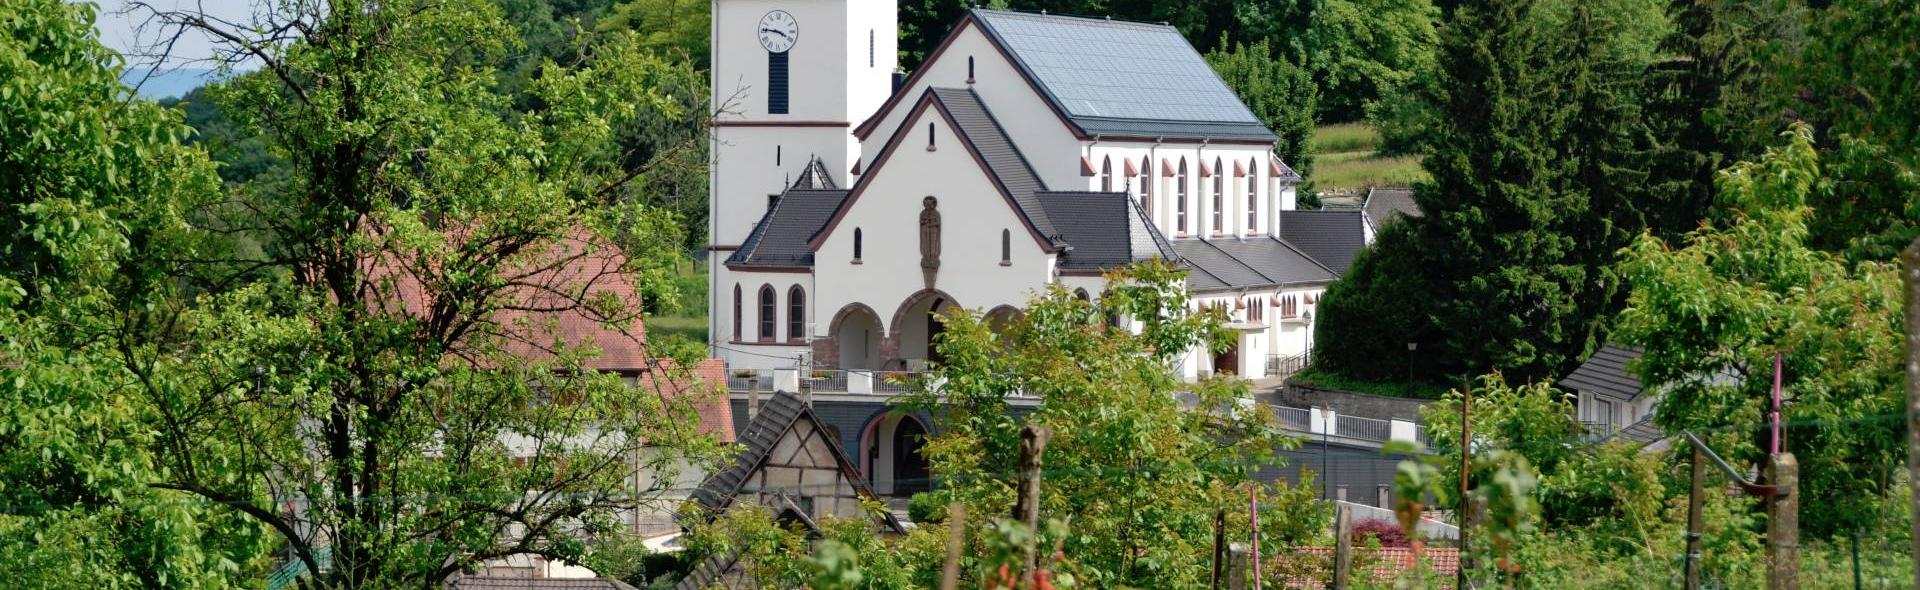 Eglise St-Georges, Bartenheim ©ADT